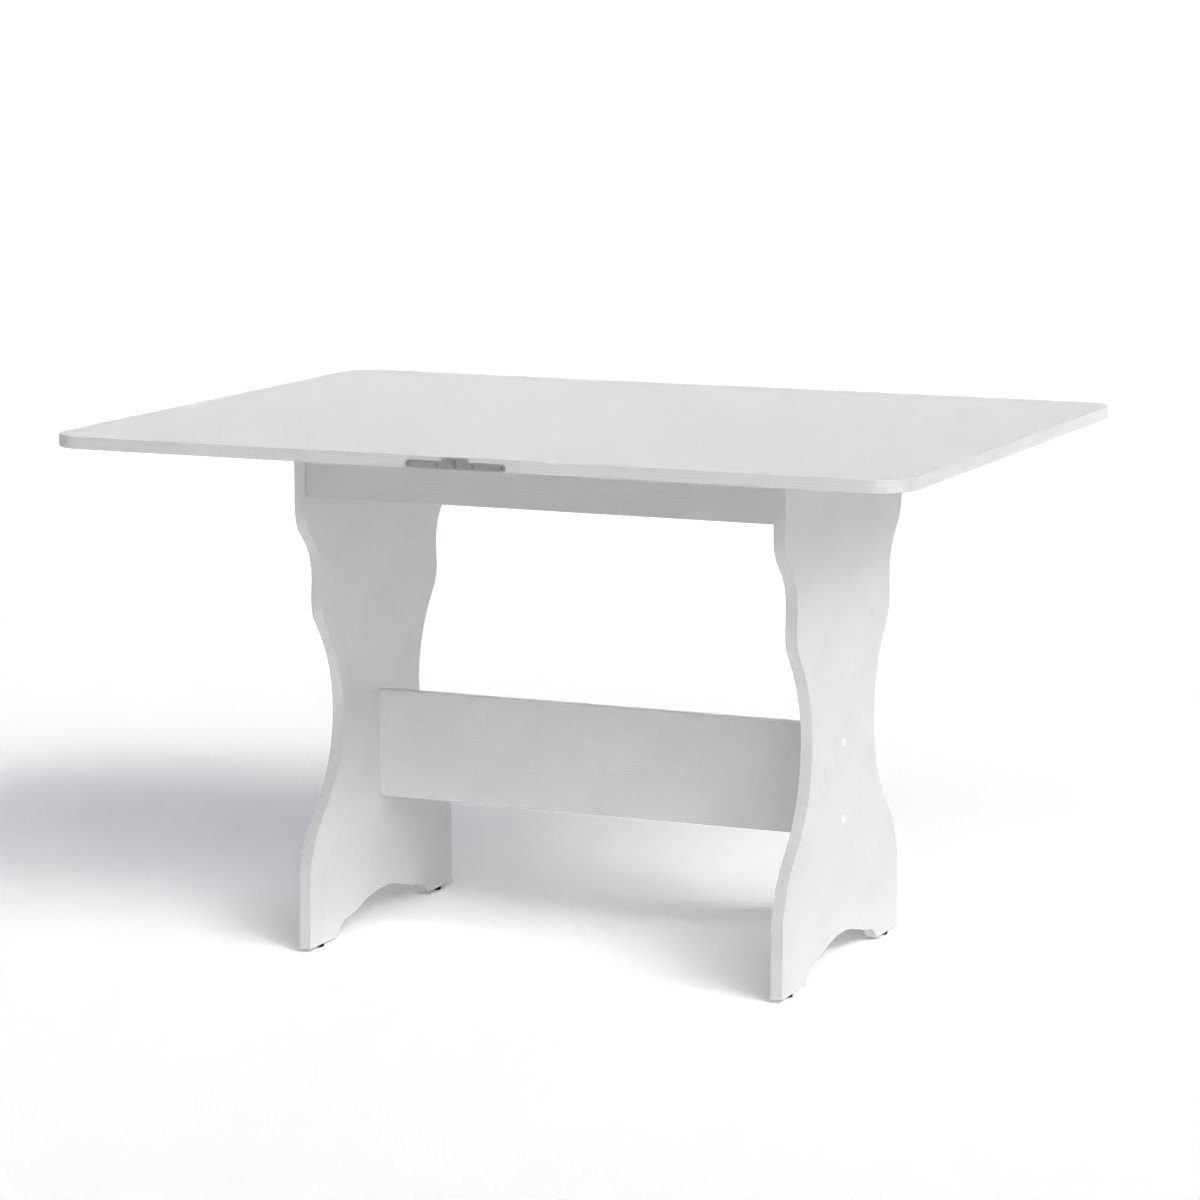 Rodnik Esstisch, ausklappbar platzsparend, drehbare Tischplatte mit abgerundeten Ecken weiß